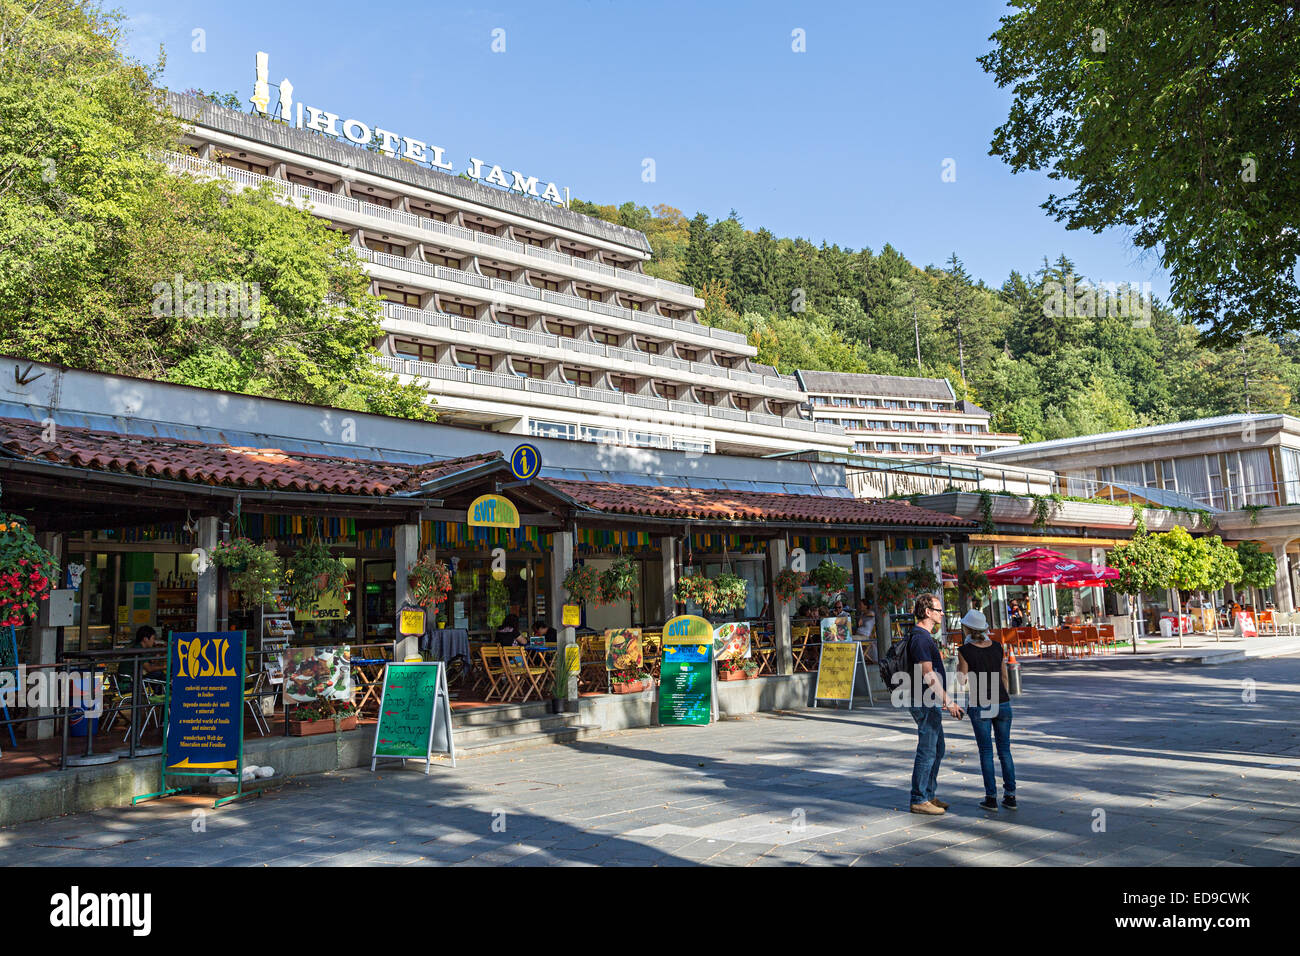 Hotel Jama e turistiche i negozi di souvenir all entrata della caverna,  Postumia, Slovenia Foto stock - Alamy